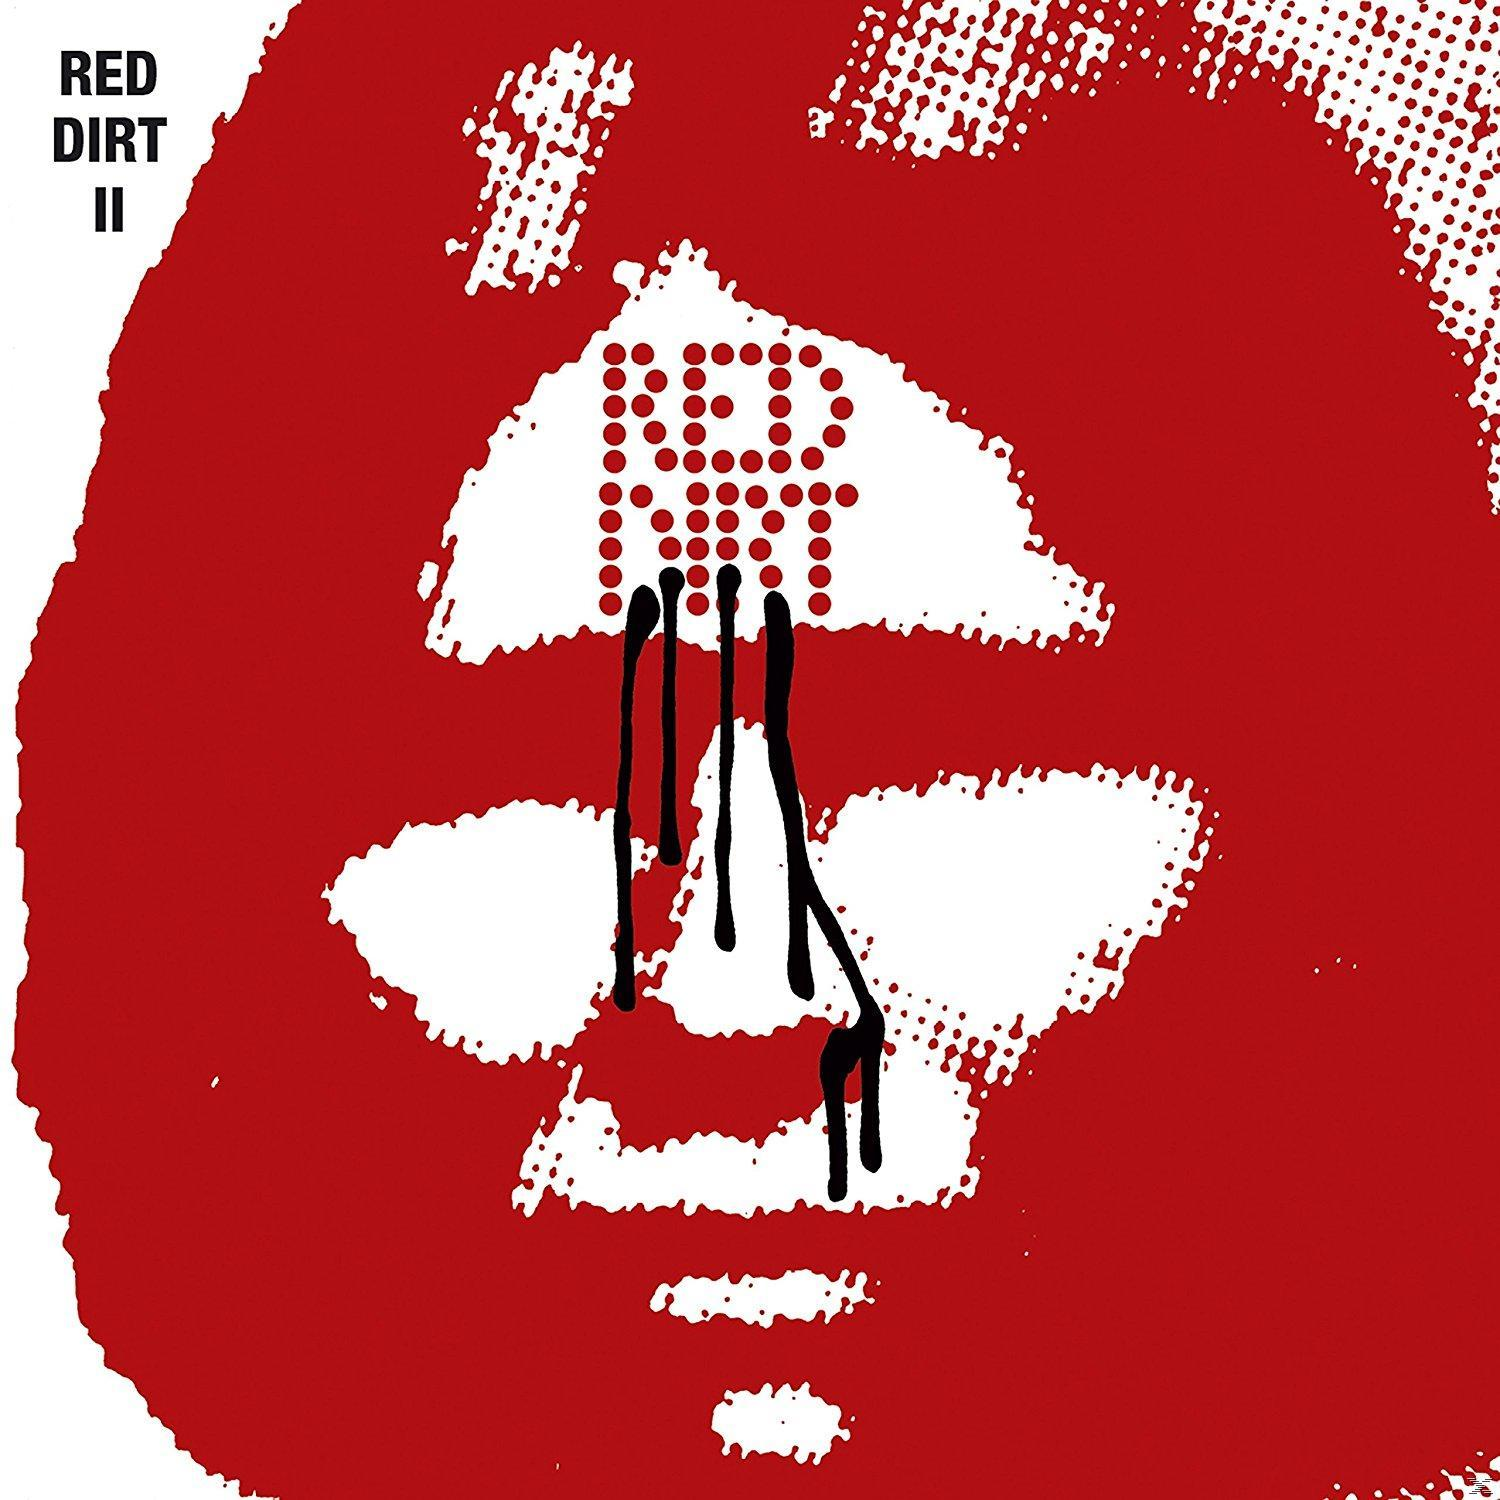 - Red (CD) Red Dirt - II Dirt